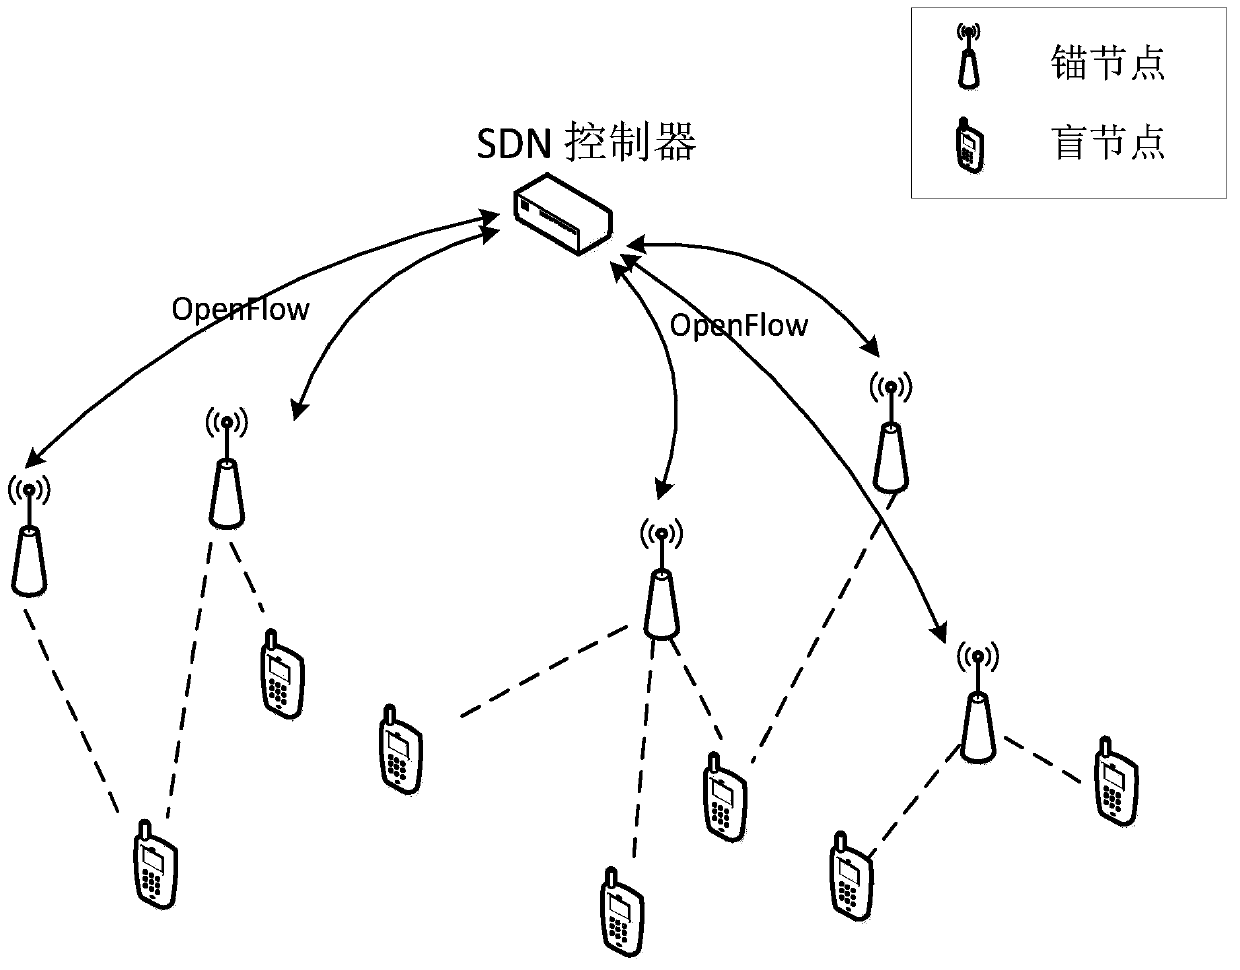 A localization method in software-defined wireless sensor network